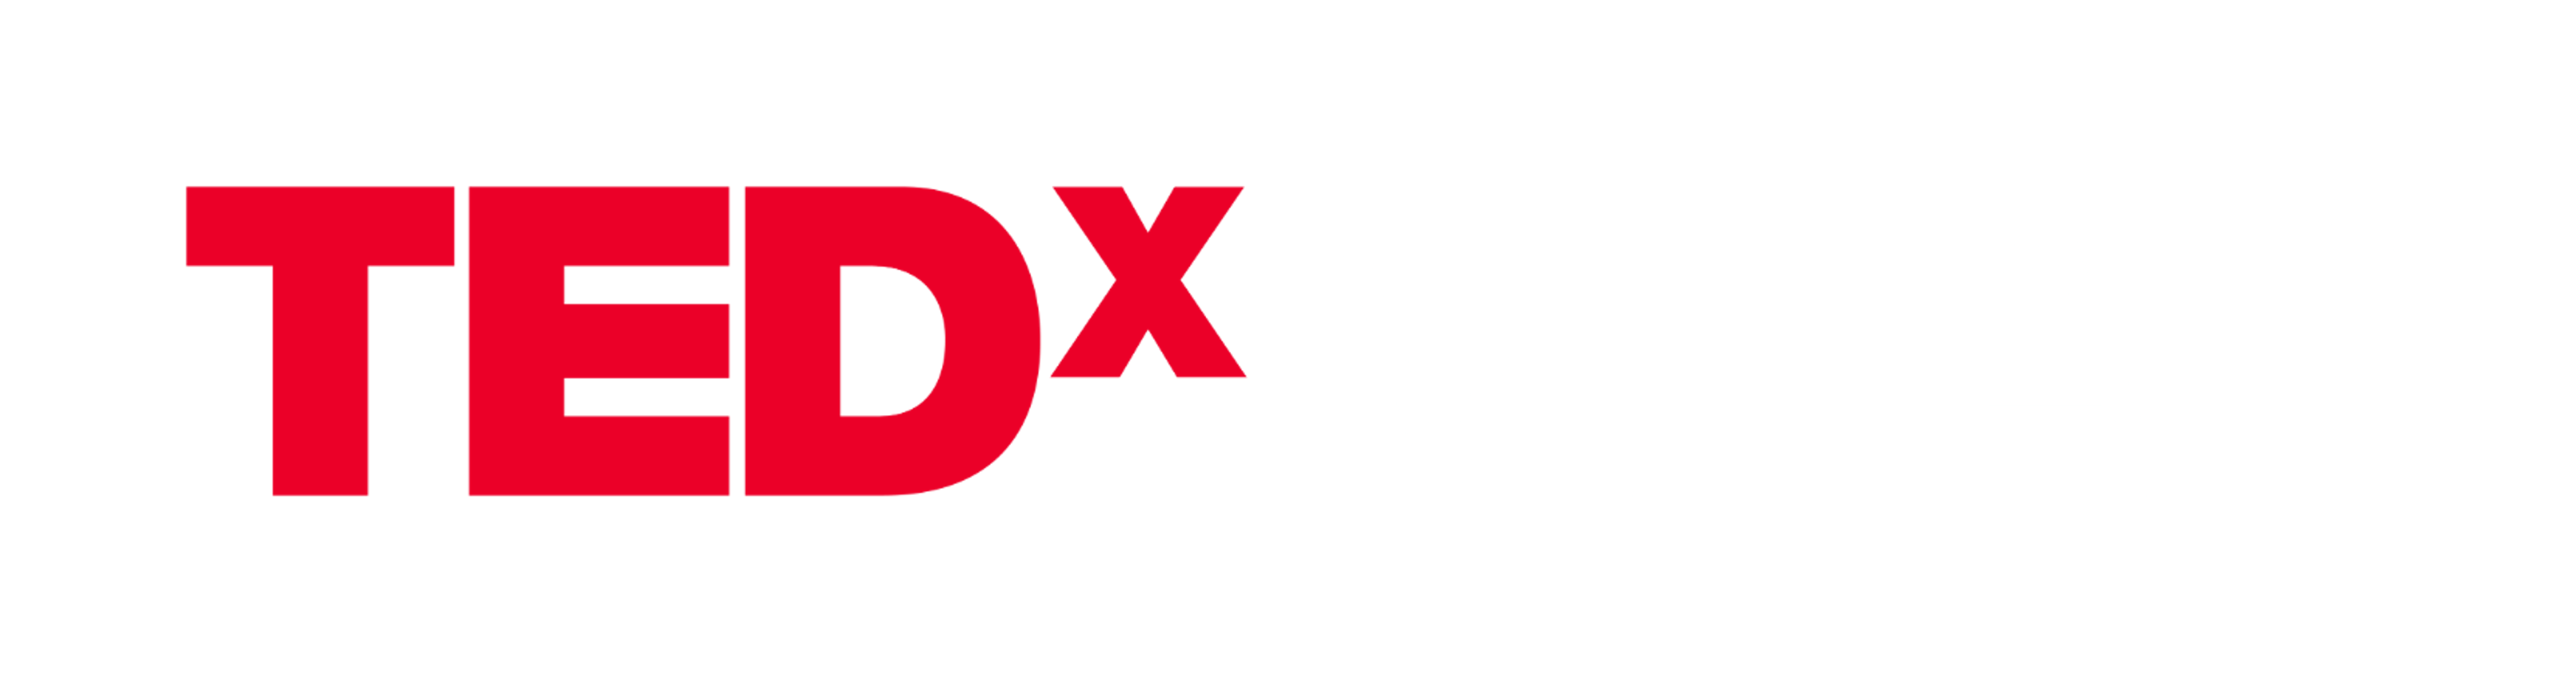 TEDxVITAP